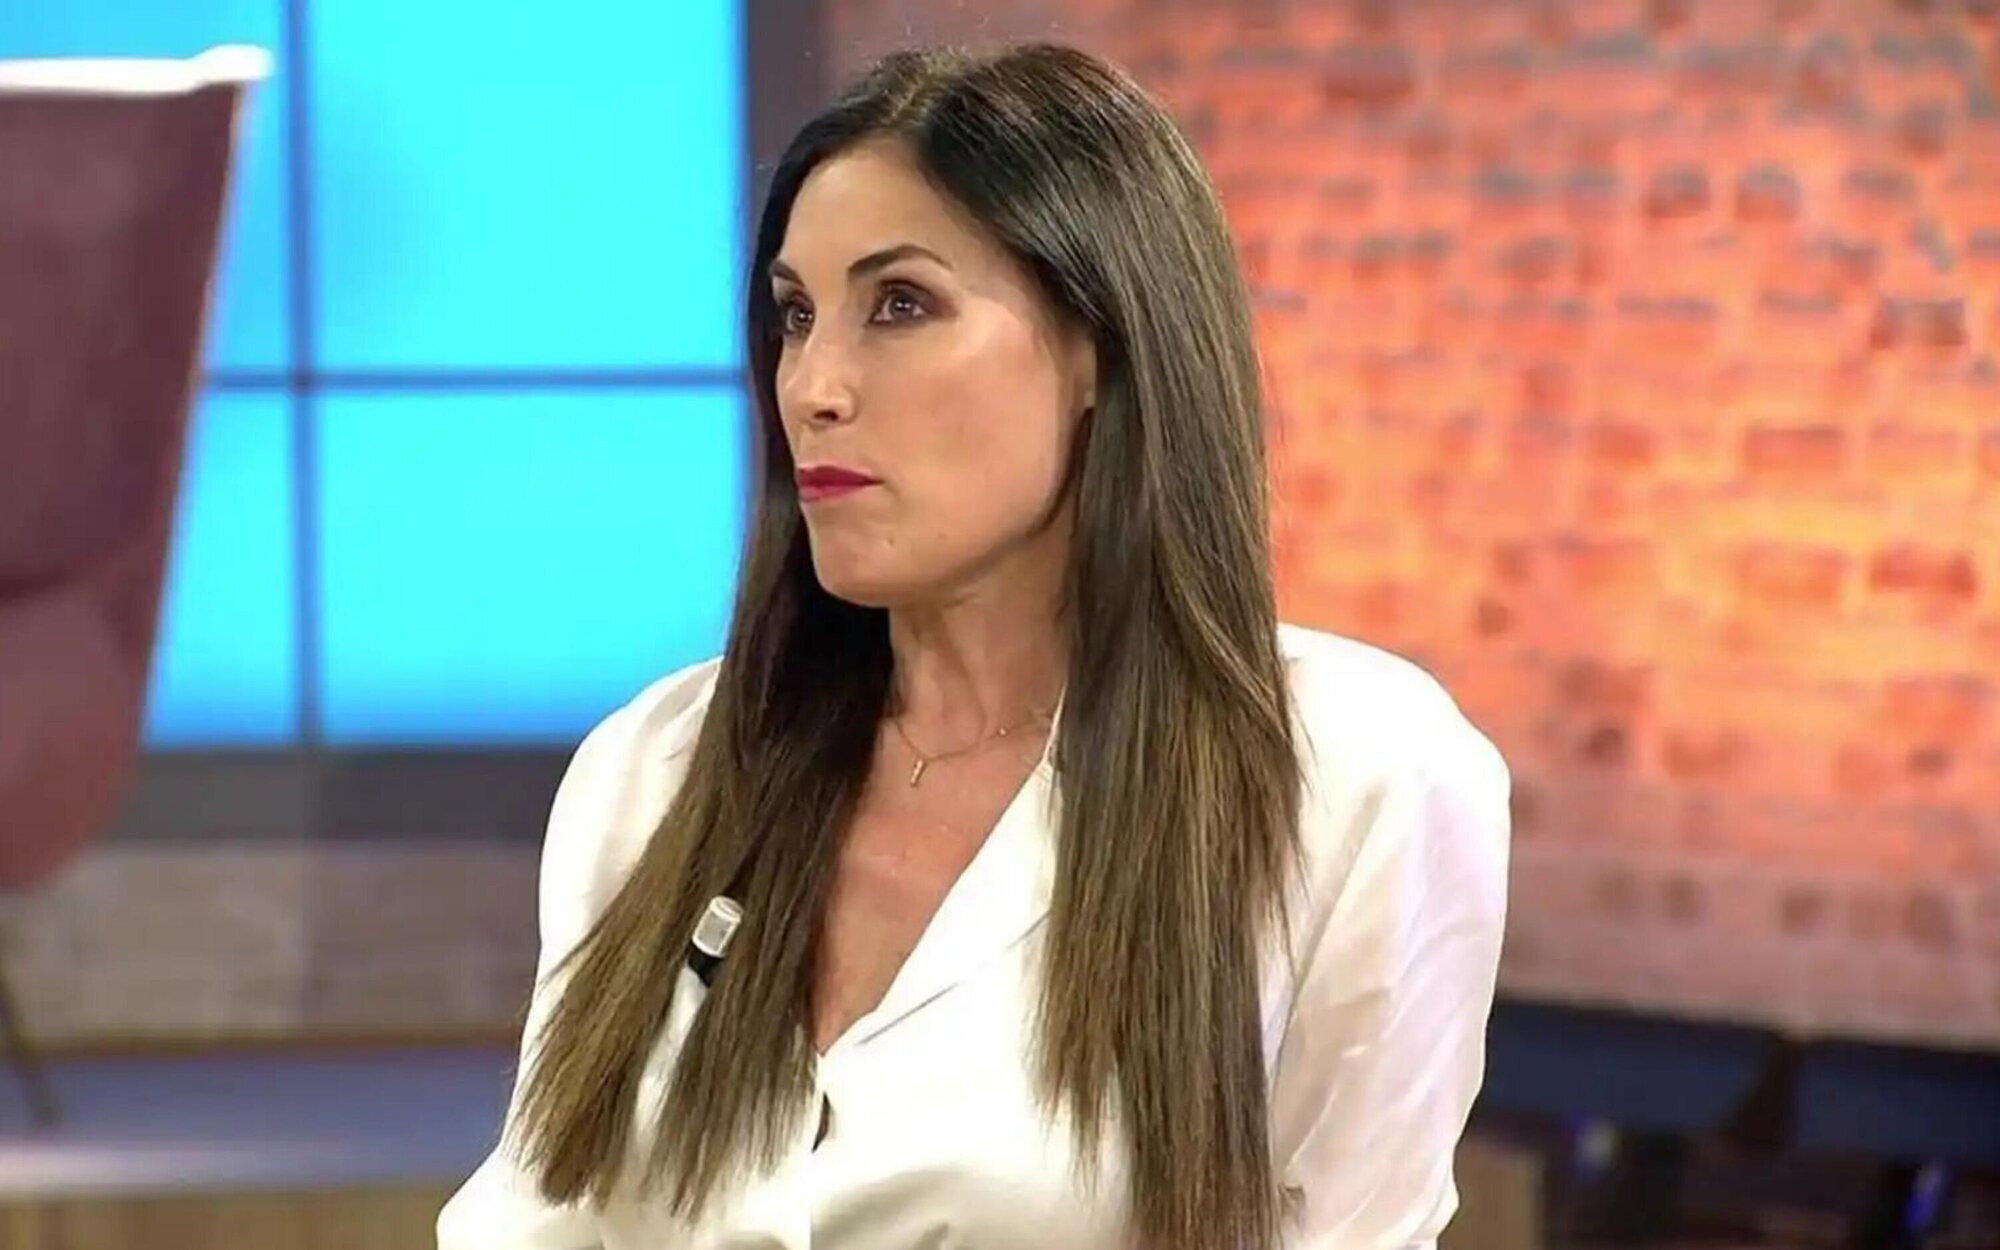 El zasca de Isabel Rábago al resto de cadenas: "Telecinco es la única que vale la pena ver"